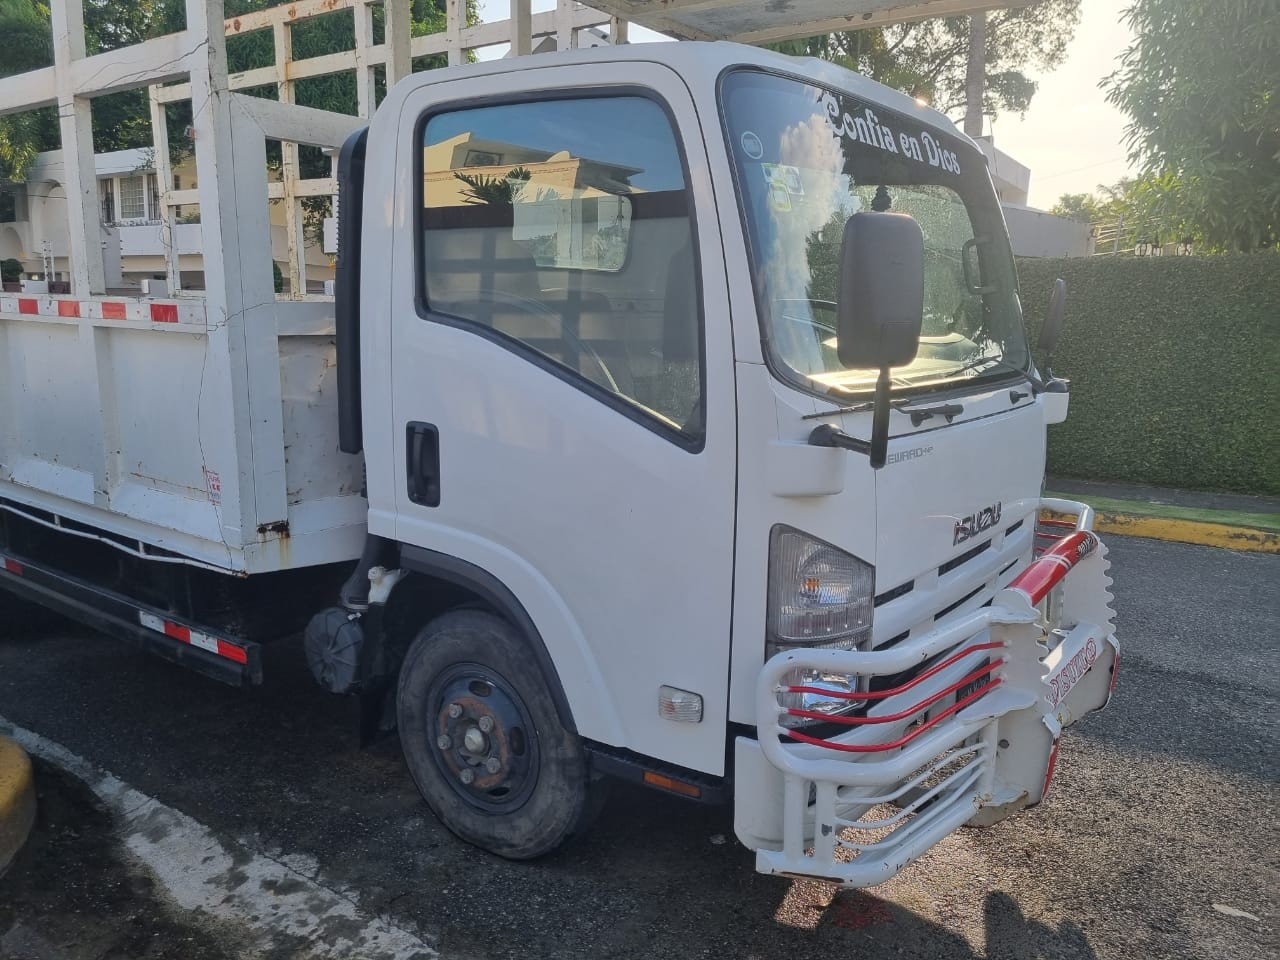 camiones y vehiculos pesados - Camion isuzu cama larga 2018 poco kilometraje 29725 km oferta